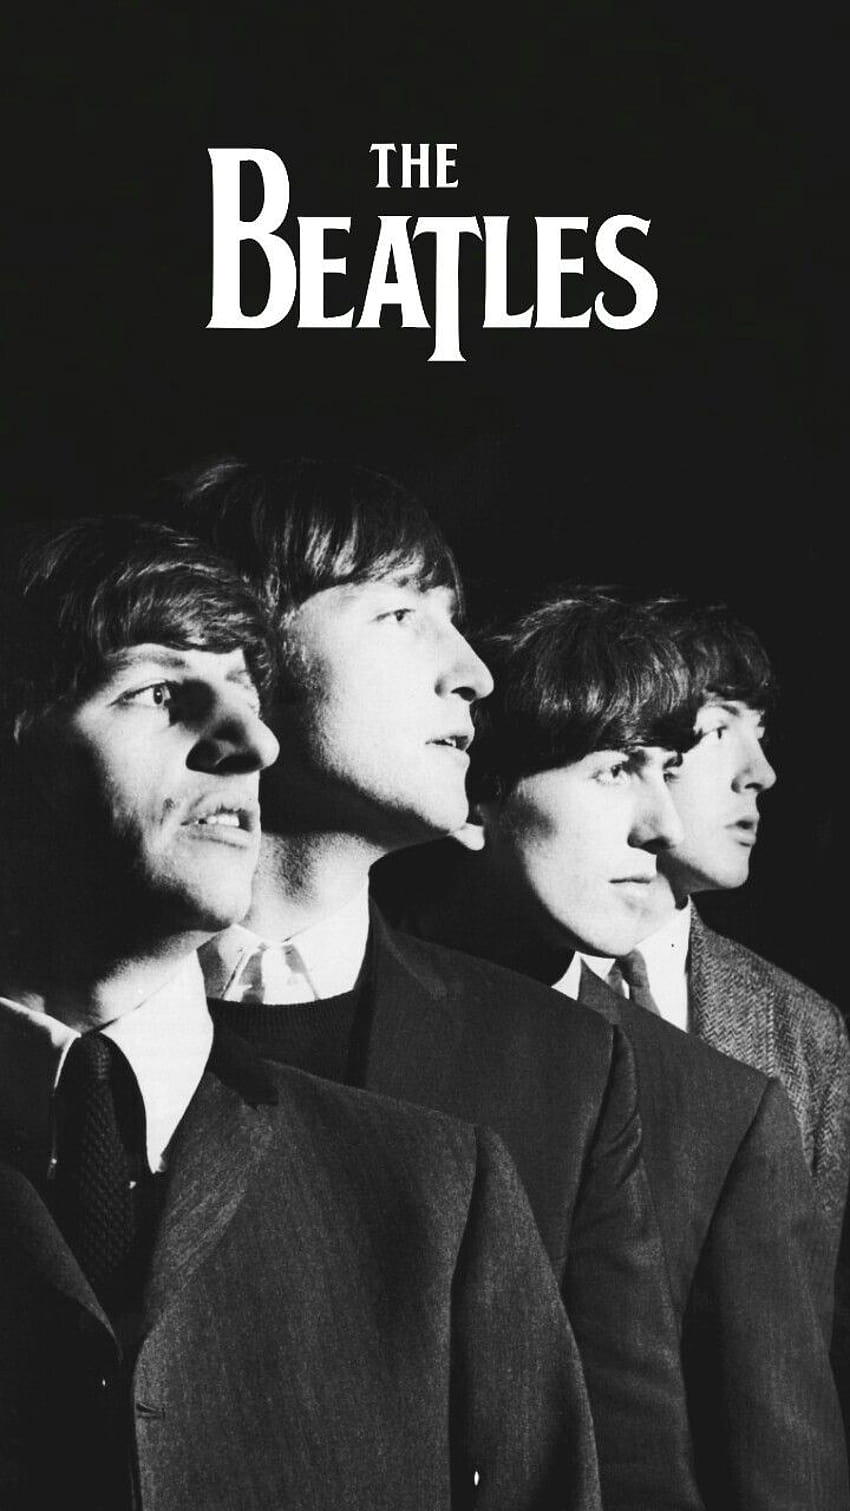 La schermata di blocco dei Beatles, Android i Beatles Sfondo del telefono HD